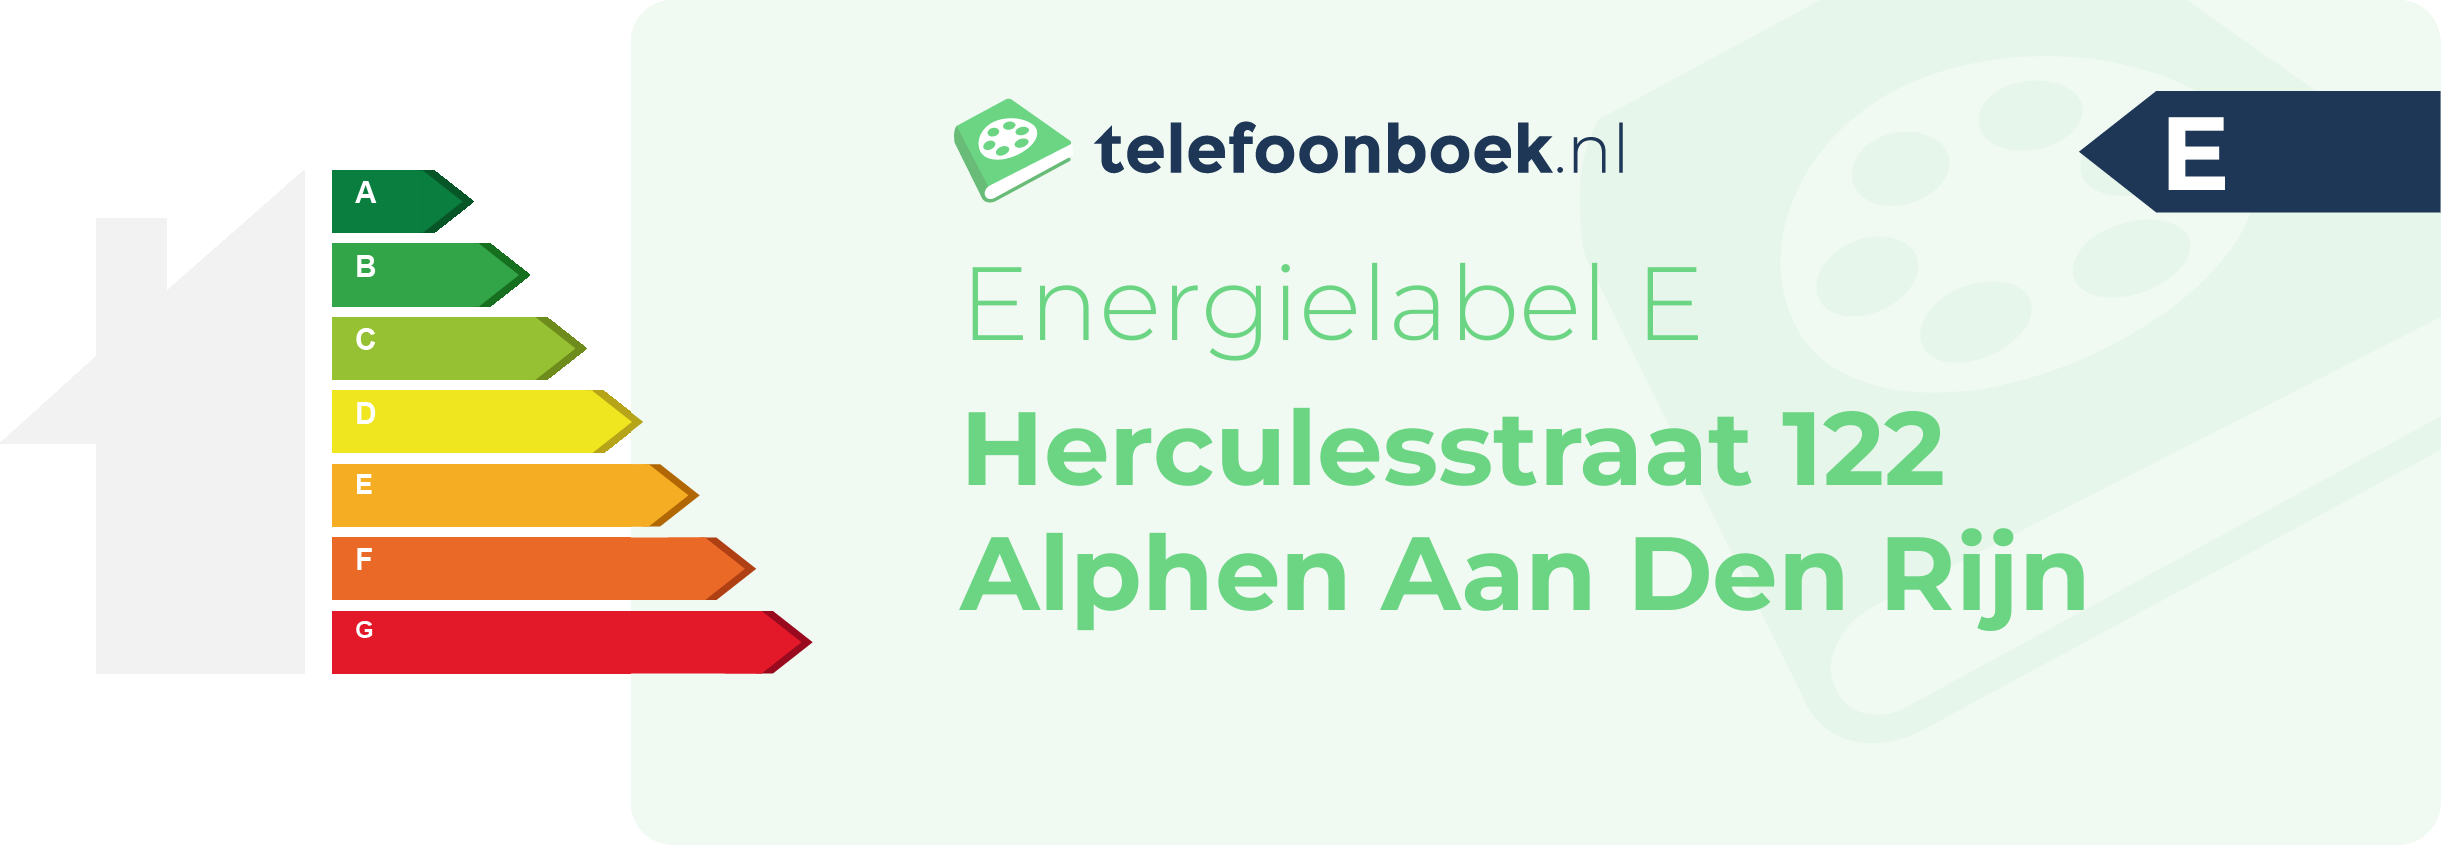 Energielabel Herculesstraat 122 Alphen Aan Den Rijn